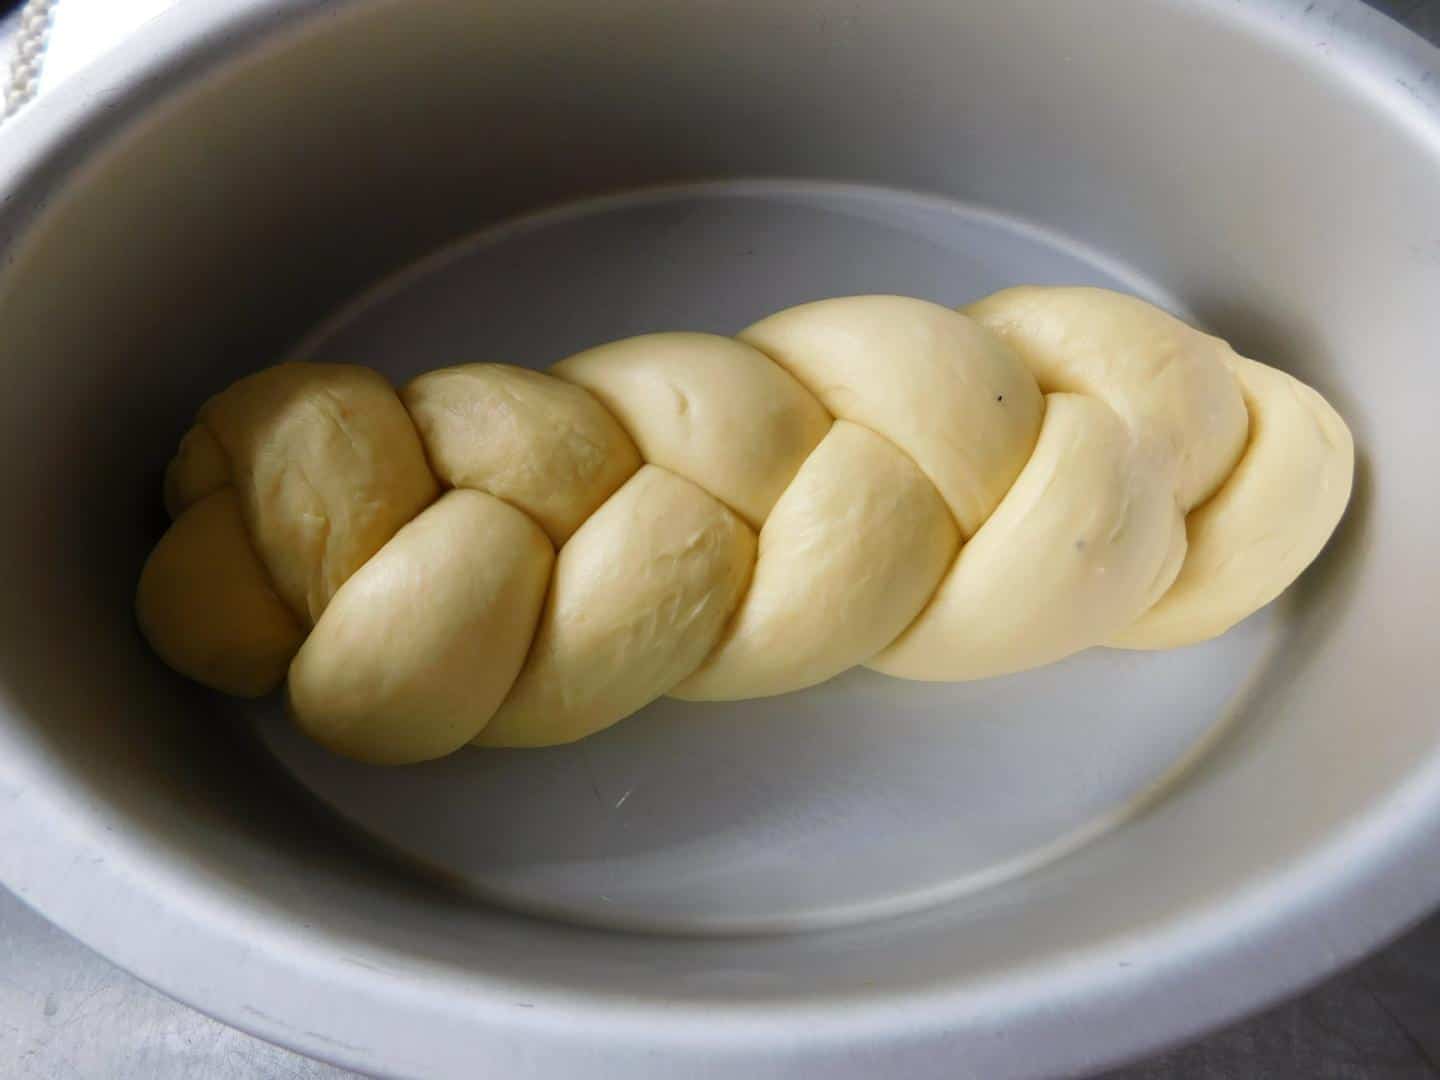 Cách làm bánh mì hoa cúc bằng nồi chiên không dầu